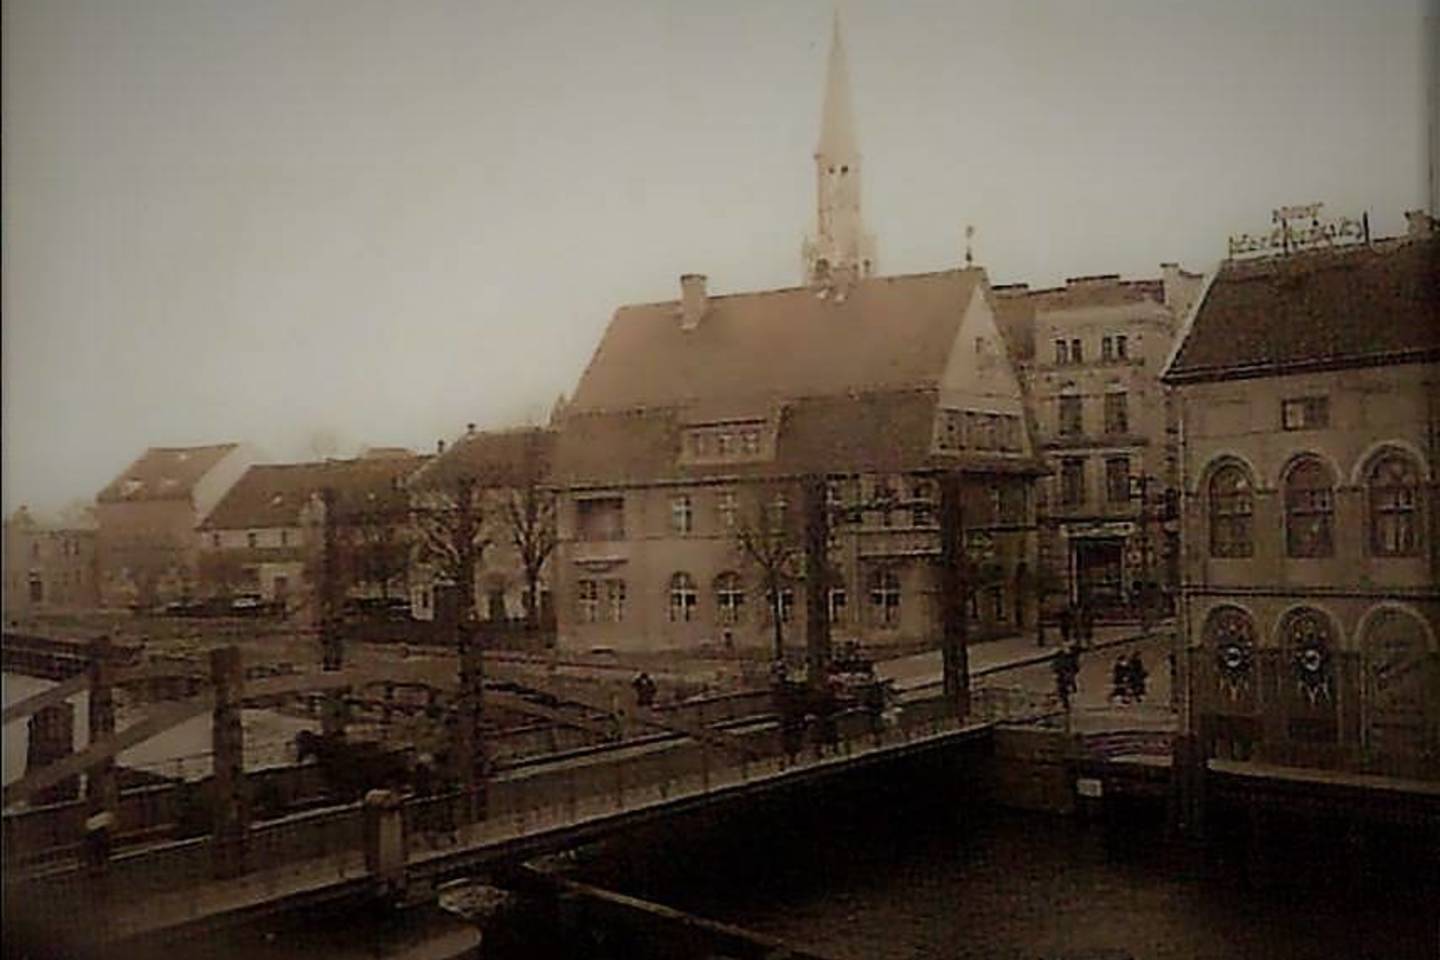  Vaizdas į Biržos tiltą ir avalynės gamintojų namą (dešinėje) tarpukariu.